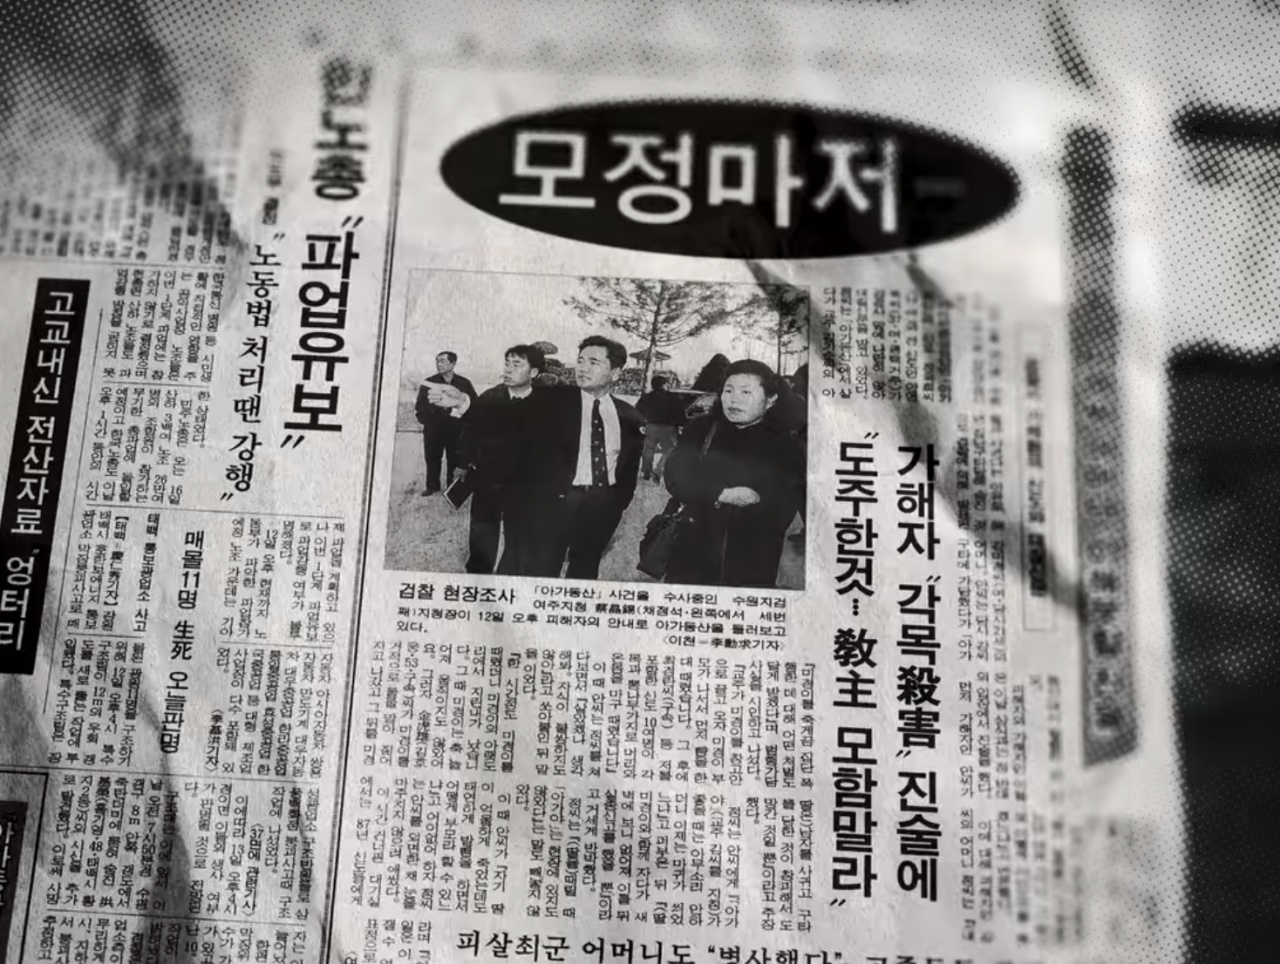 ‘아가동산’ 교주 김기순은 고 최낙귀 살인 배후로 지목됐다. 그러나 어머니 선영례의 진술 덕분에 김기순은 혐의를 벗었고, 언론은 일그러진 모정에 개탄해 했다. Ⓒ 넷플릭스